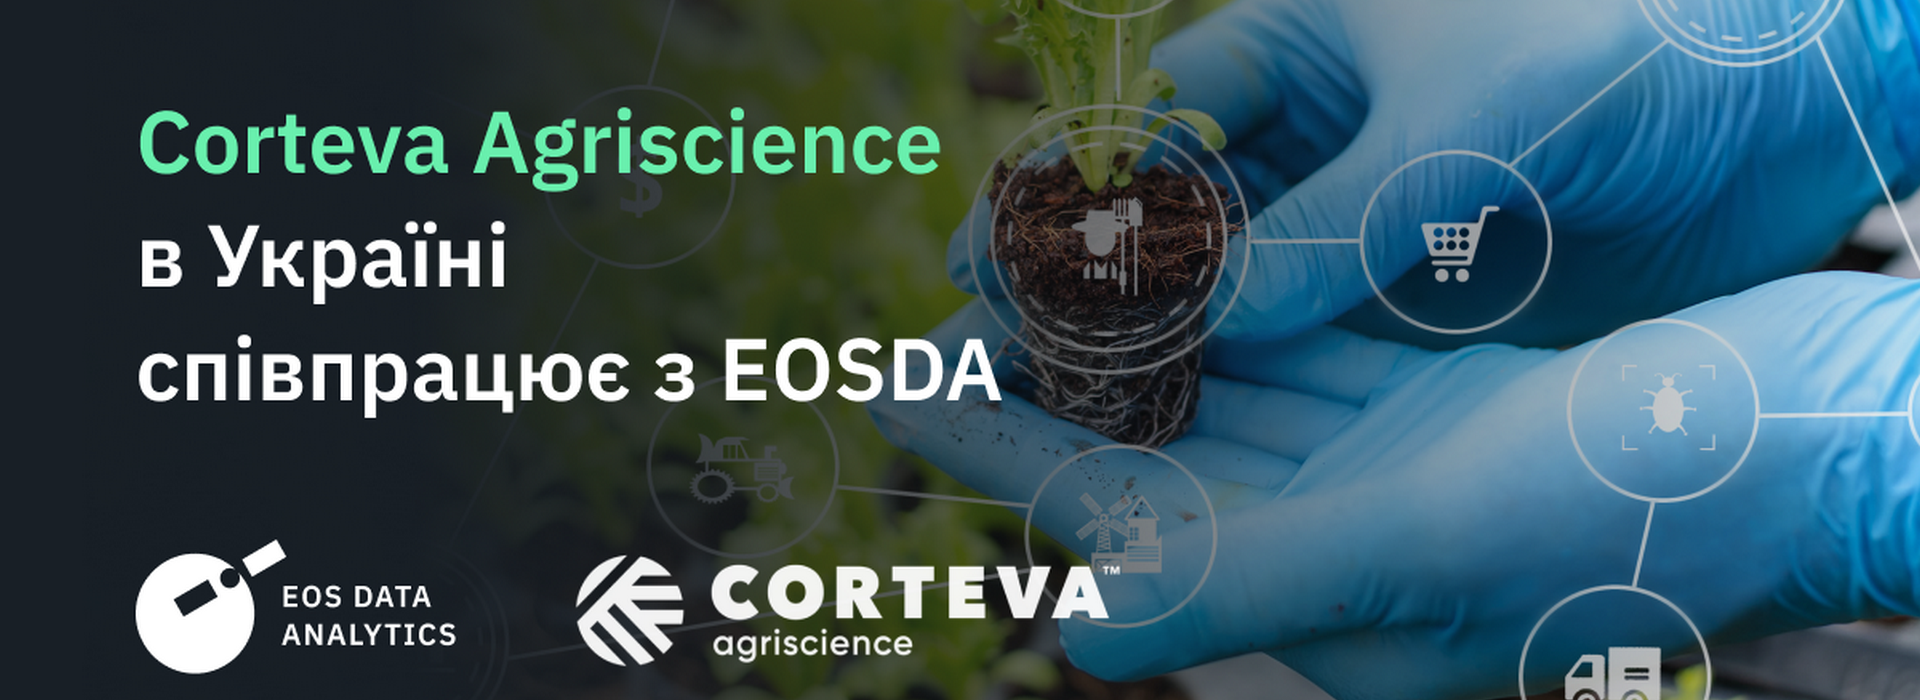 Corteva Agriscience працюватиме з супутниковою аналітикою для посилення агрономічної підтримки українських фермерів